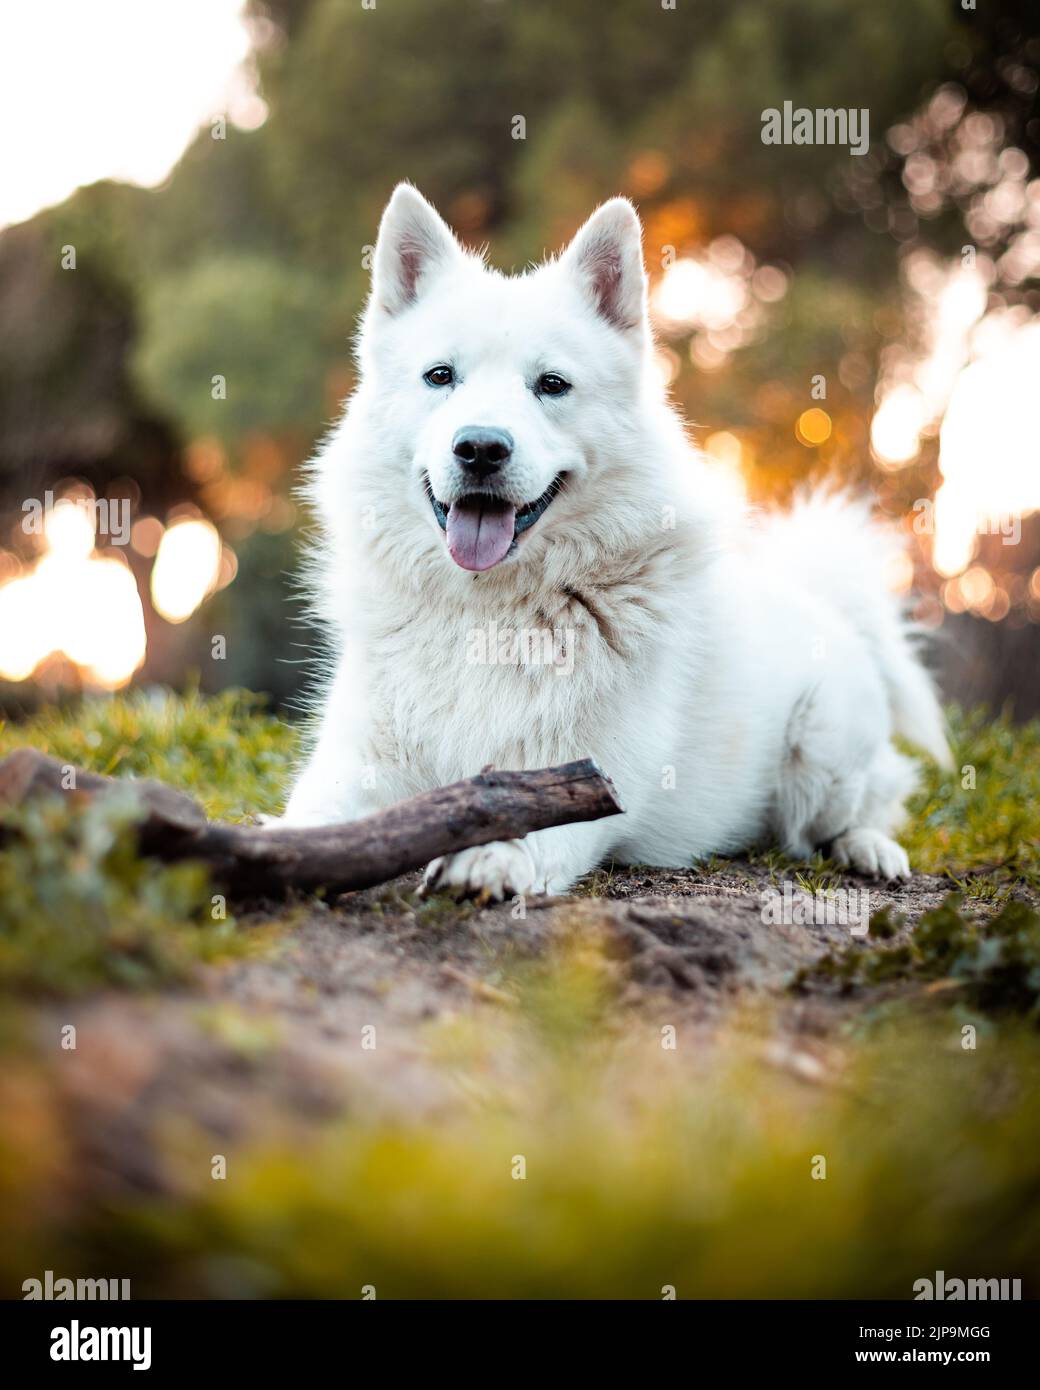 dog, stick, berger blanc suisse, weisser schweizer schäferhund, dogs, sticks, berger blanc suisses, white shepherd dog Stock Photo